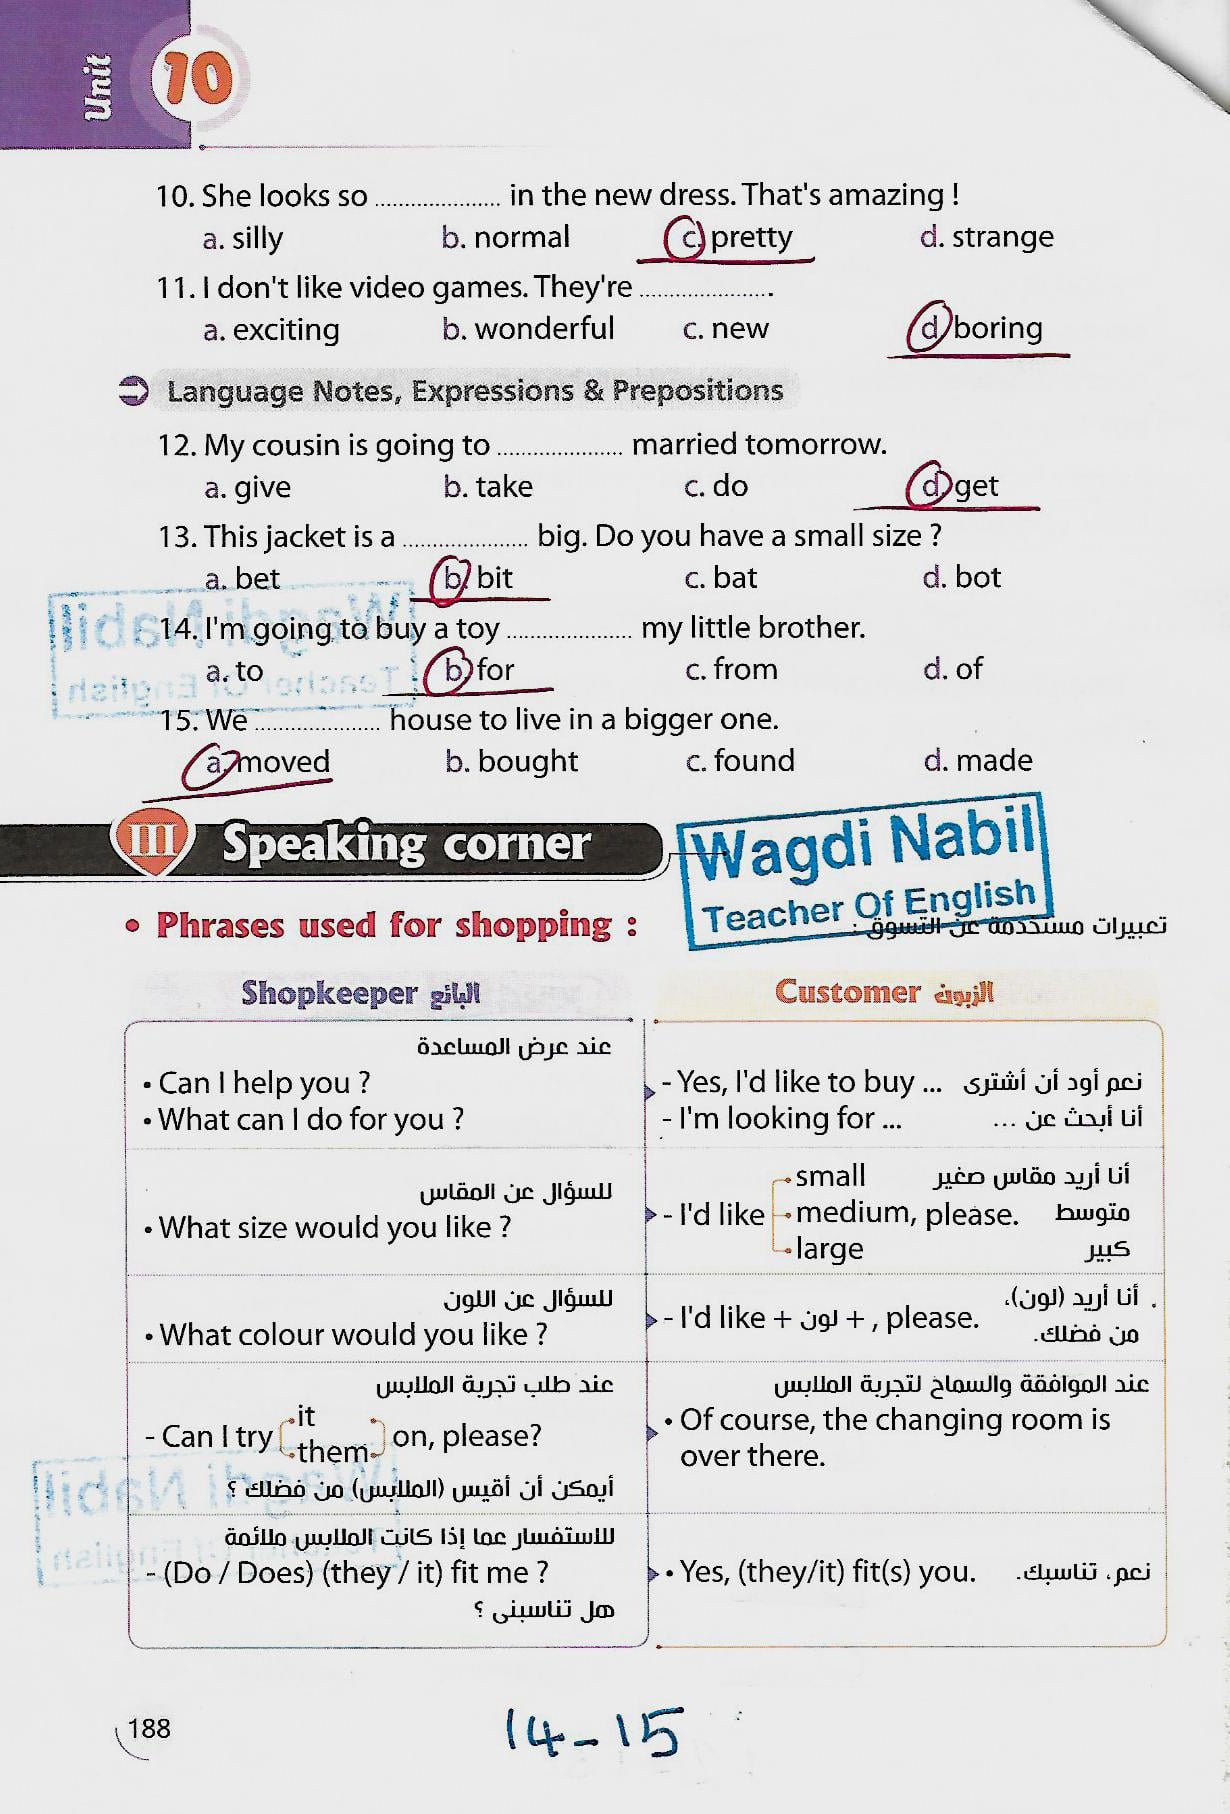 مراجعة اللغة الانجليزية للصف الثاني الاعدادي الترم الثاني mr _ Wagdi Nabil